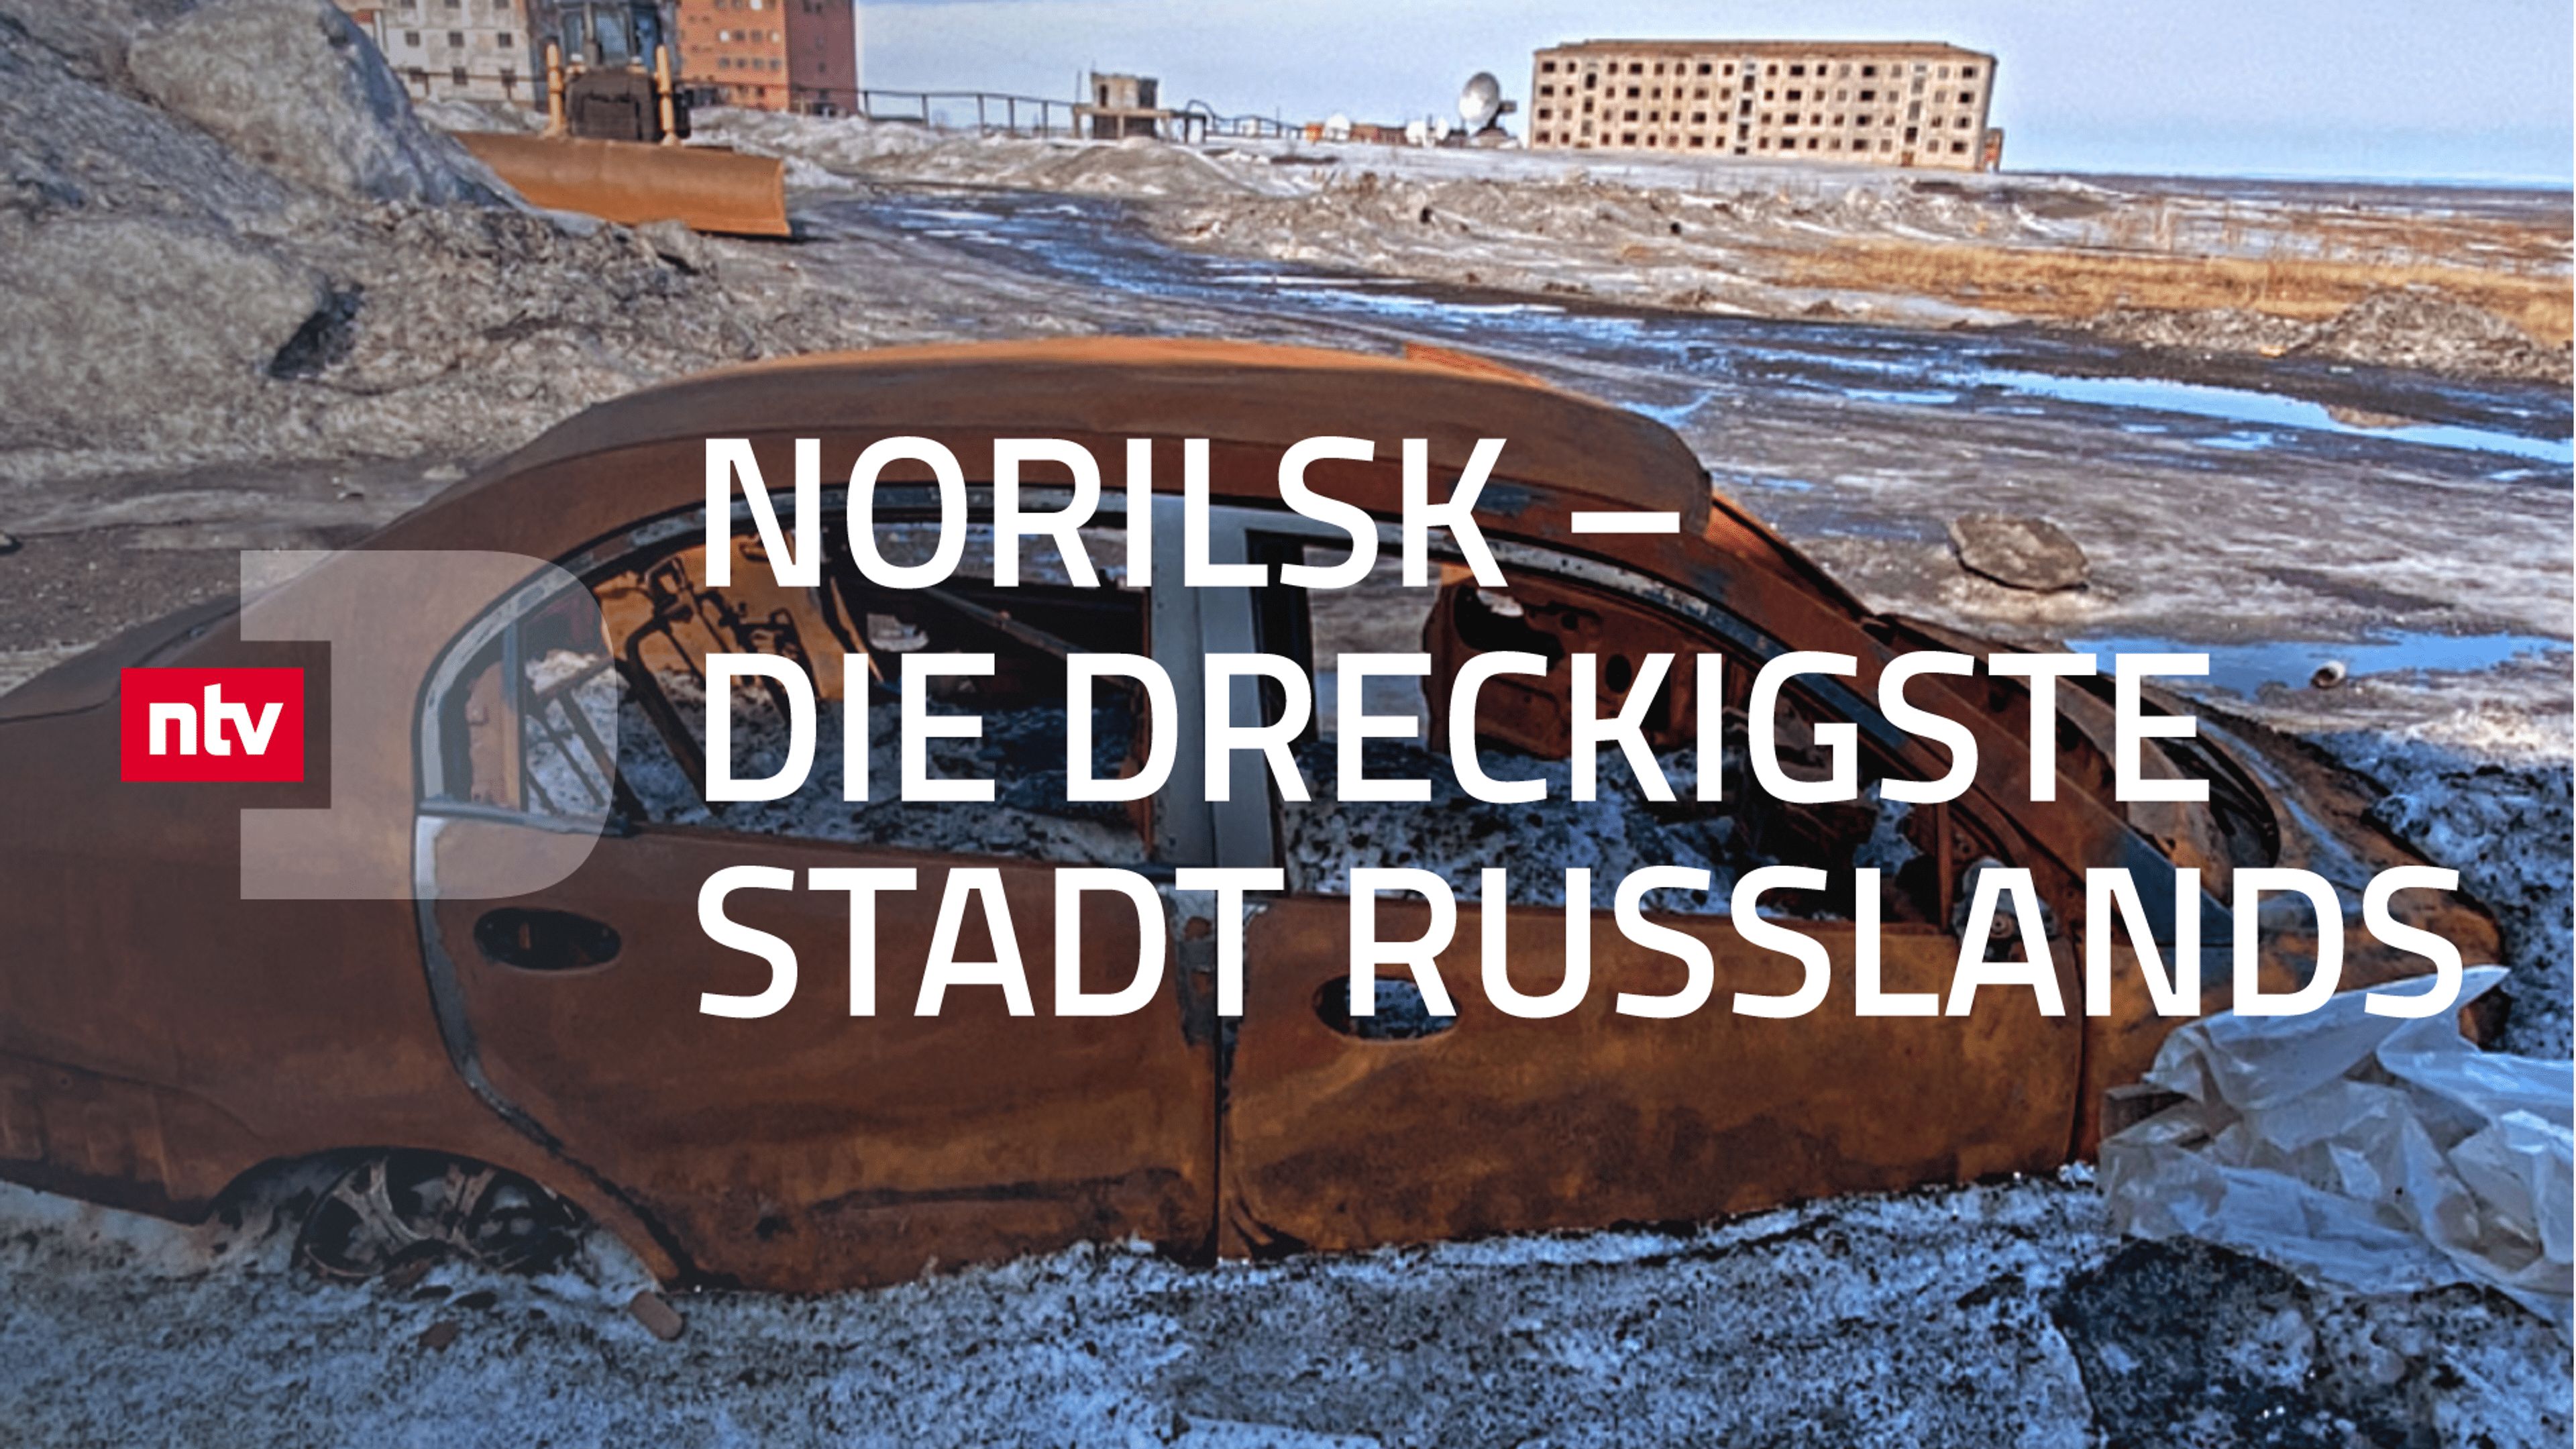 Norilsk - Die dreckigste Stadt Russlands